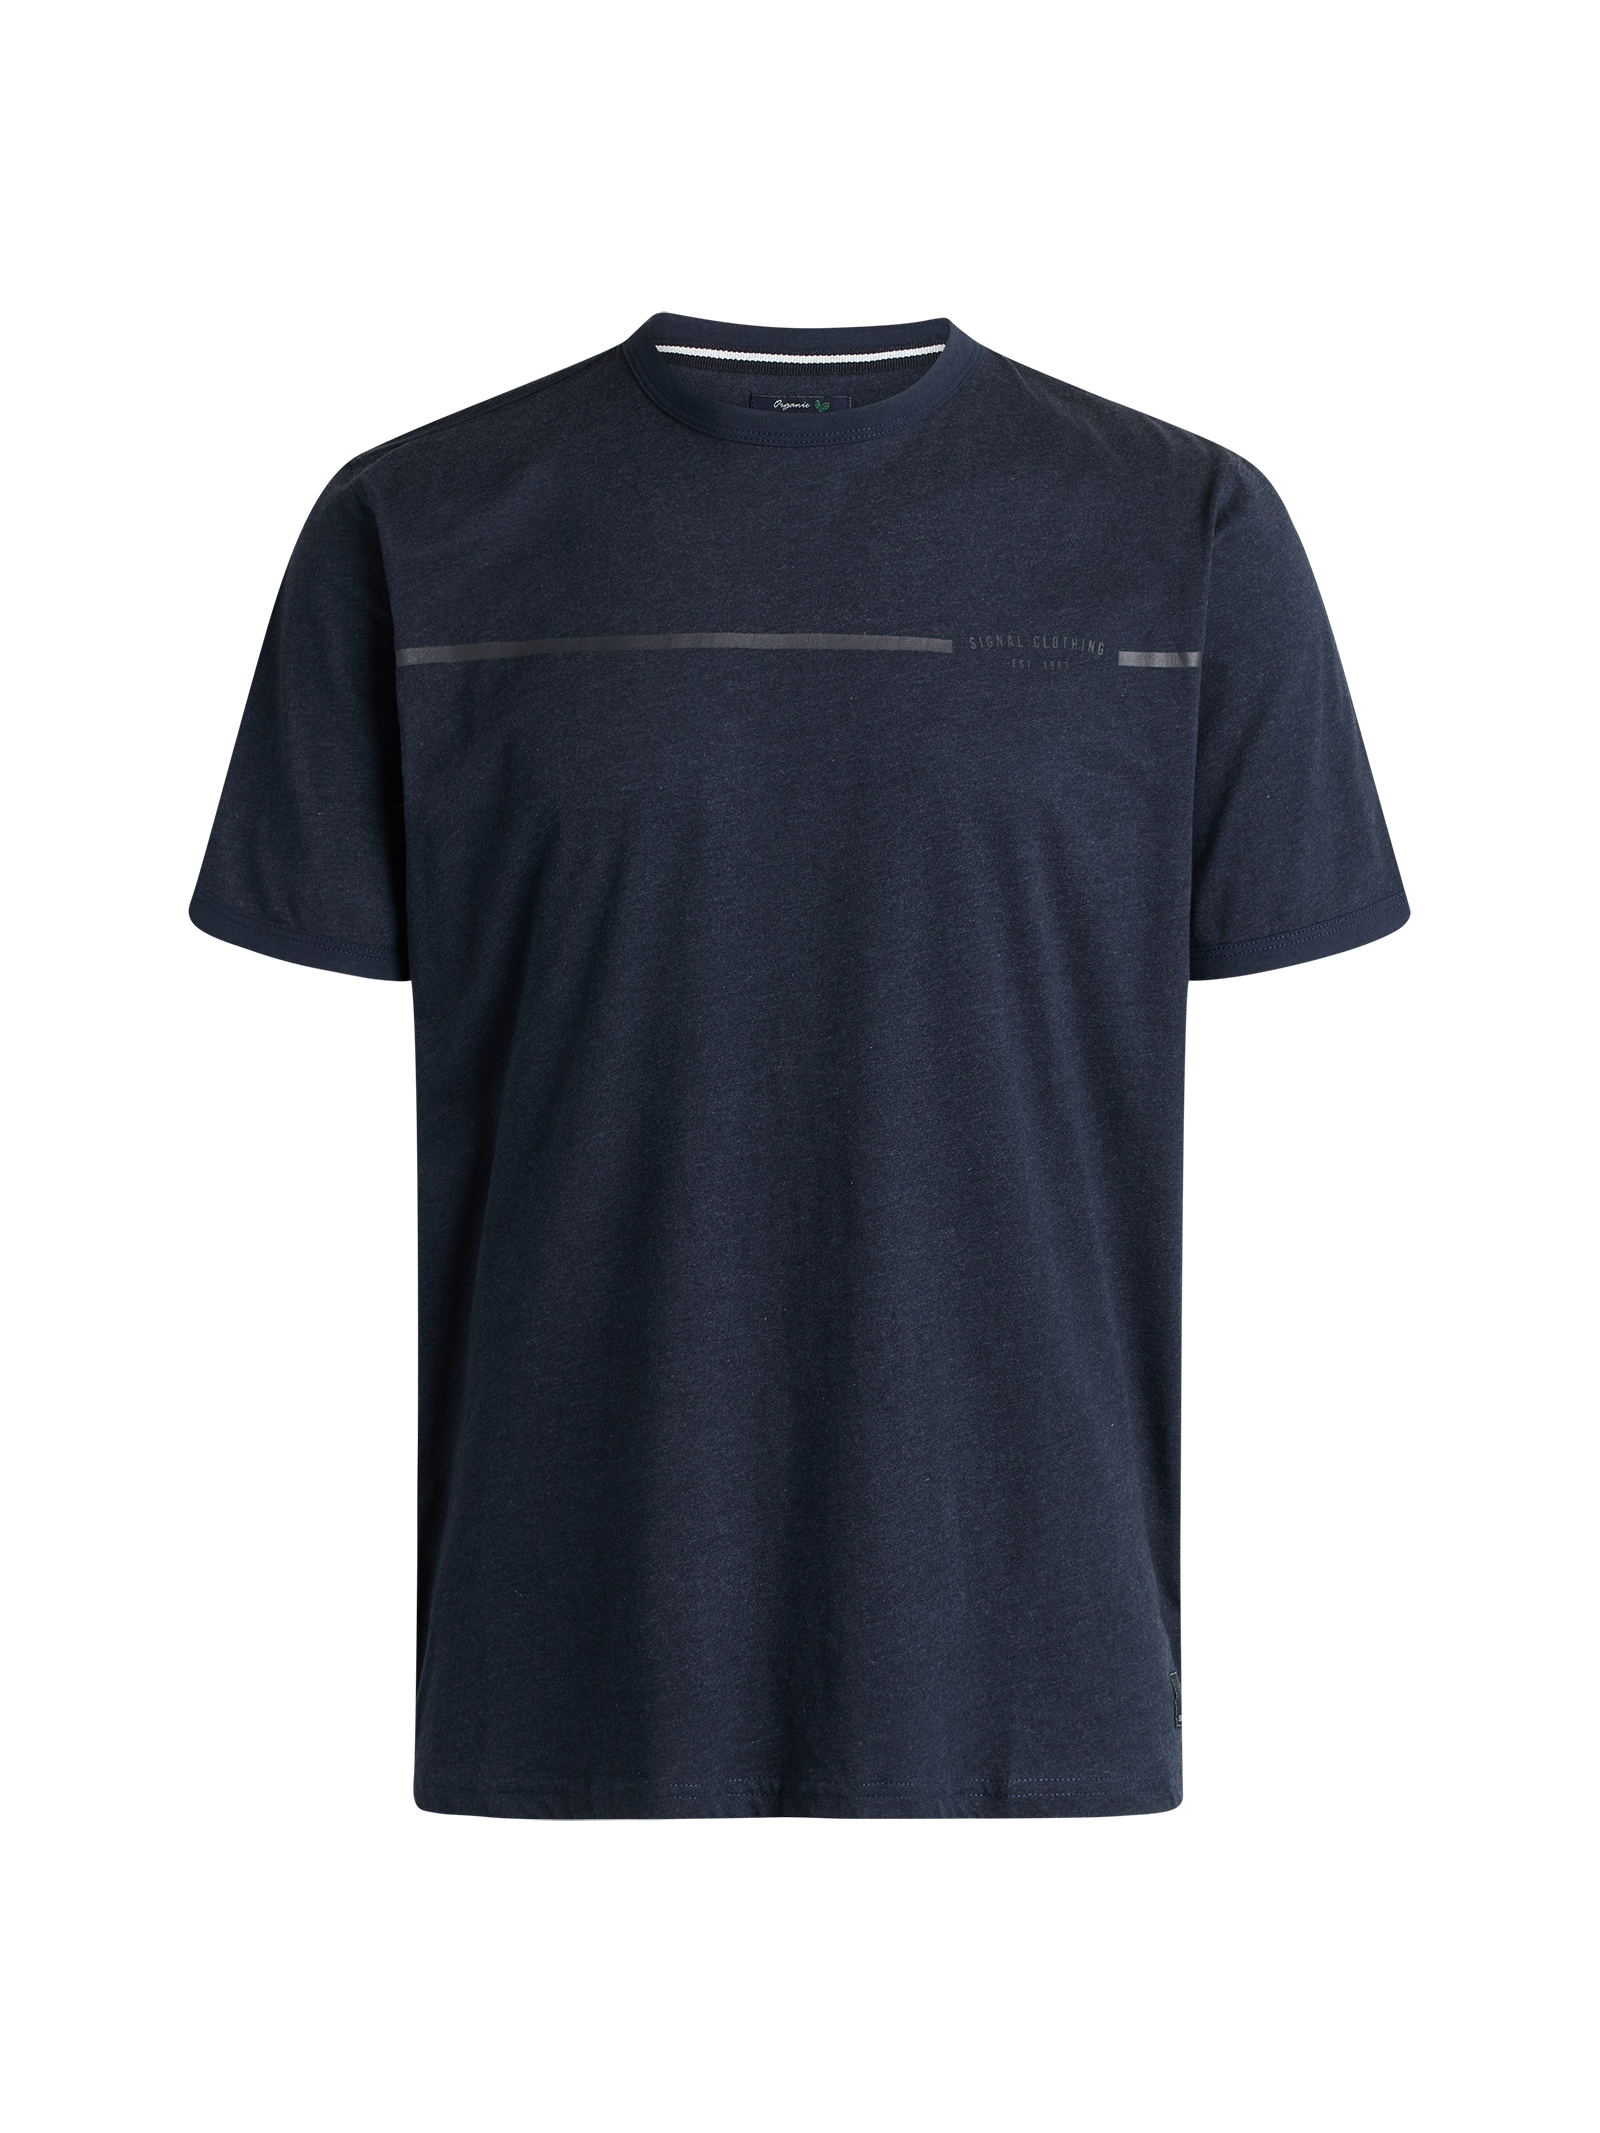 Signal New Aldo T-shirt, Blå, 4XL